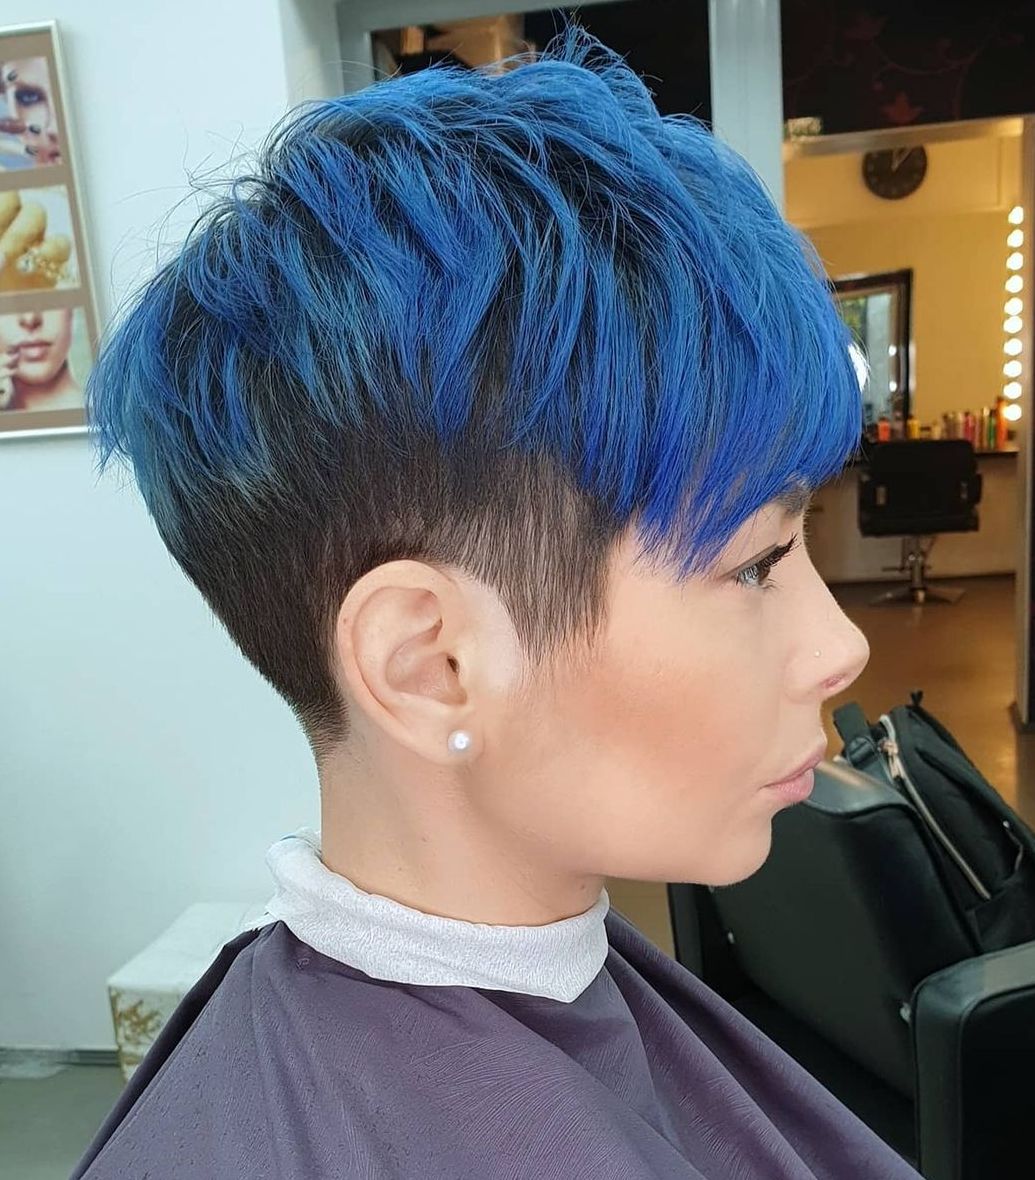 Bright Blue Highlights on Short Dark Hair